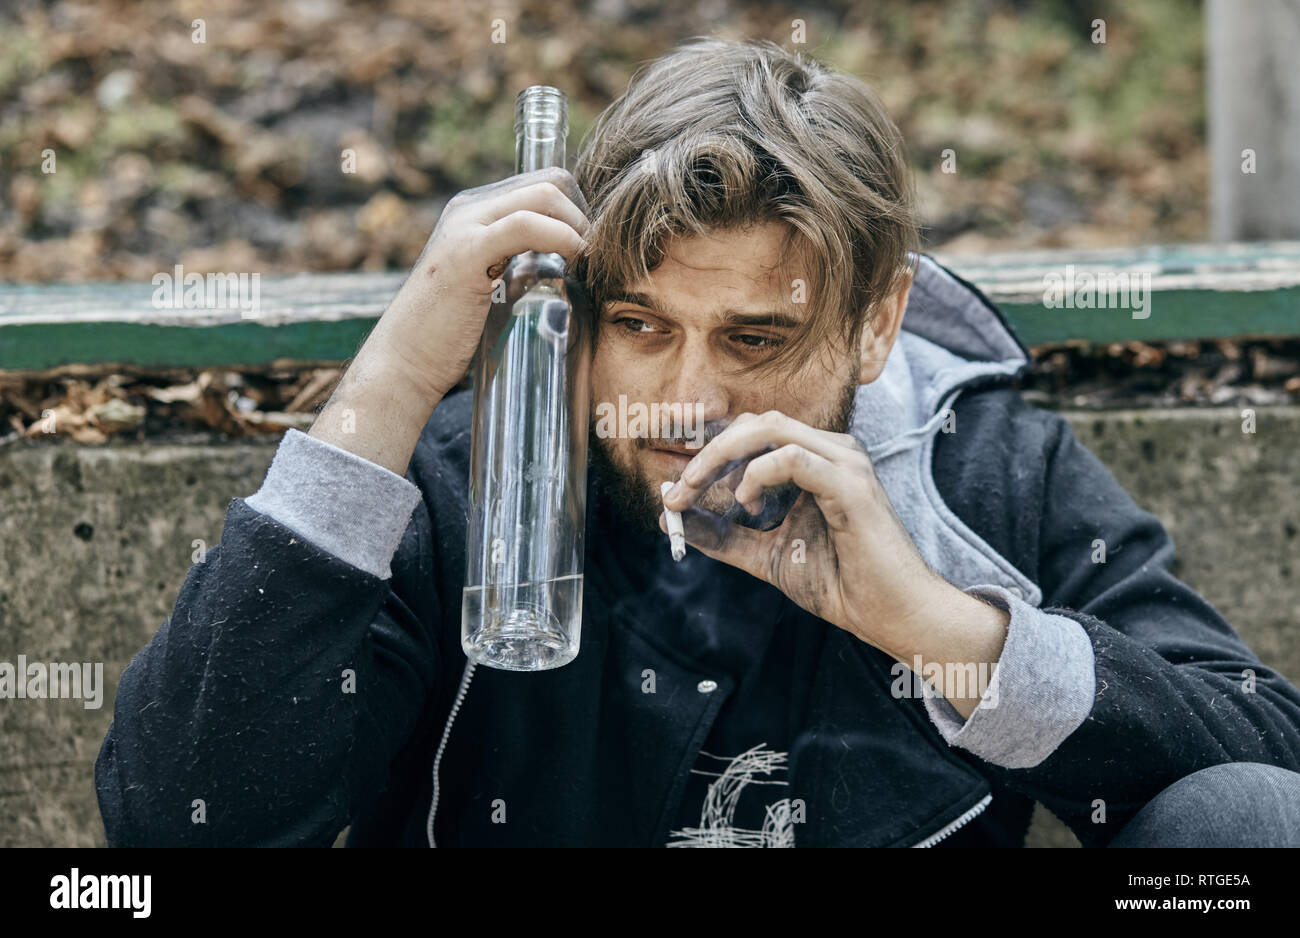 Der Mann hält ein Glas Wodka. Betrunkene Jugendliche. (Alkoholismus, Schmerz, Leid, Verzweiflung, Hoffnungslosigkeit, soziale Problem der Abhängigkeit Konzept) Stockfoto